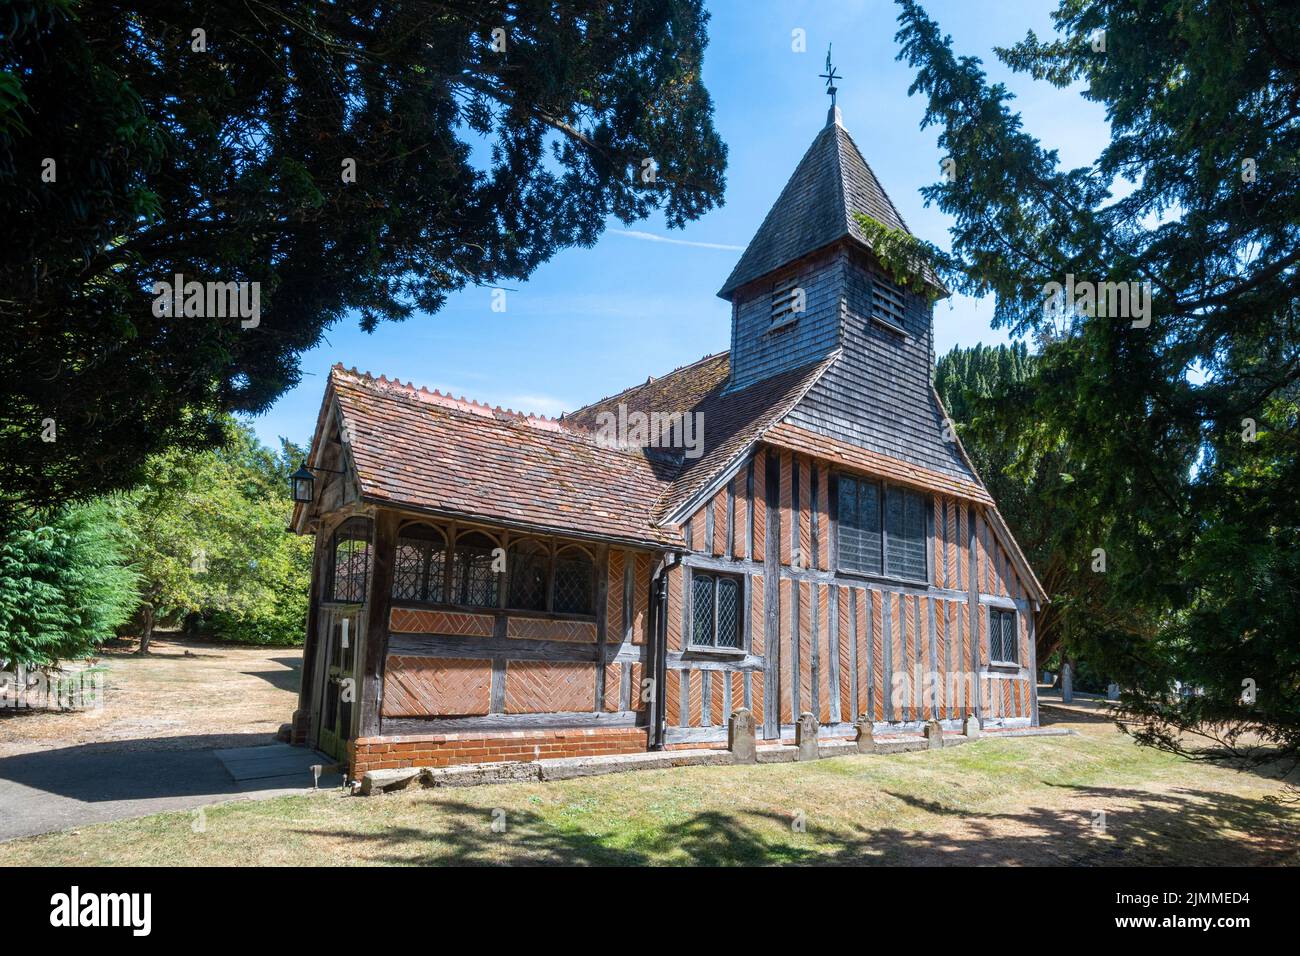 L'église paroissiale de Mattingley, une église à pans de bois classée de catégorie I avec briquetage d'os de hareng dans le village de Mattingley, Hampshire, Angleterre, Royaume-Uni Banque D'Images